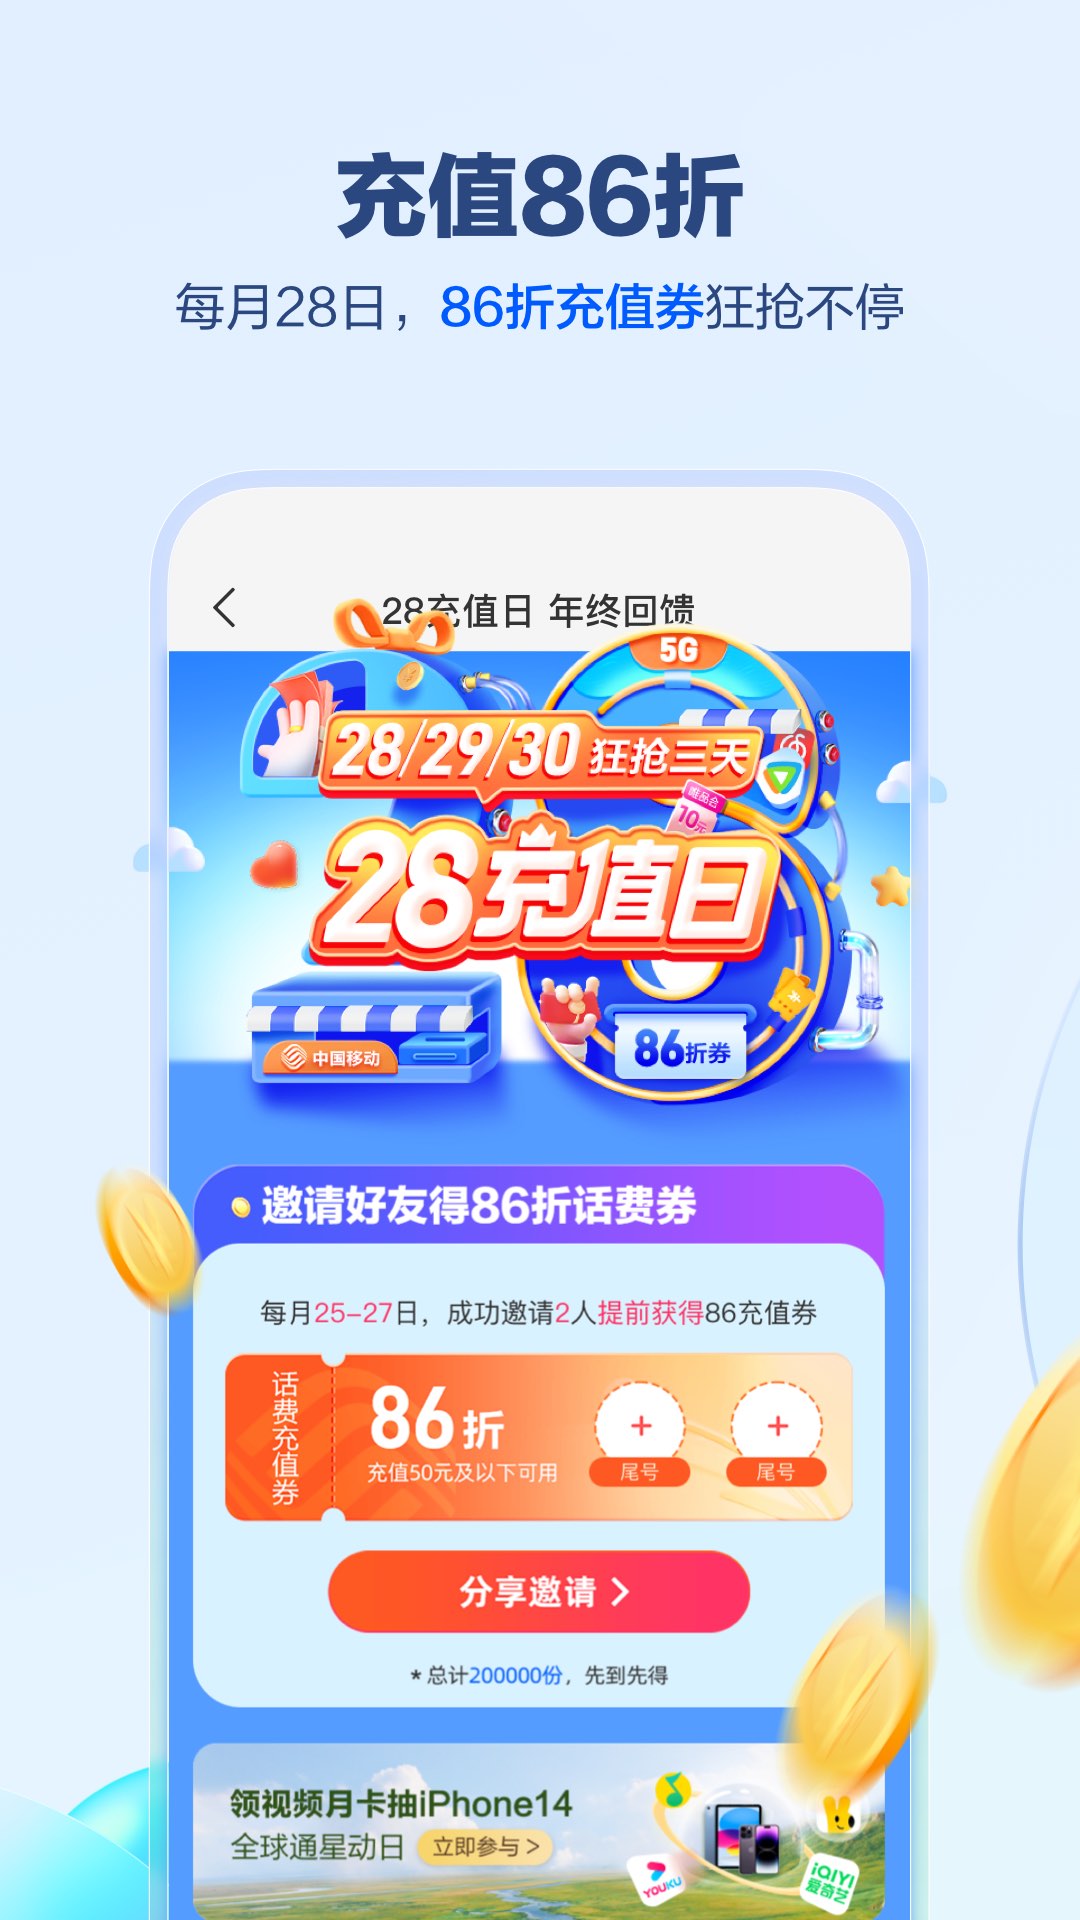 中国移动客户端app下载